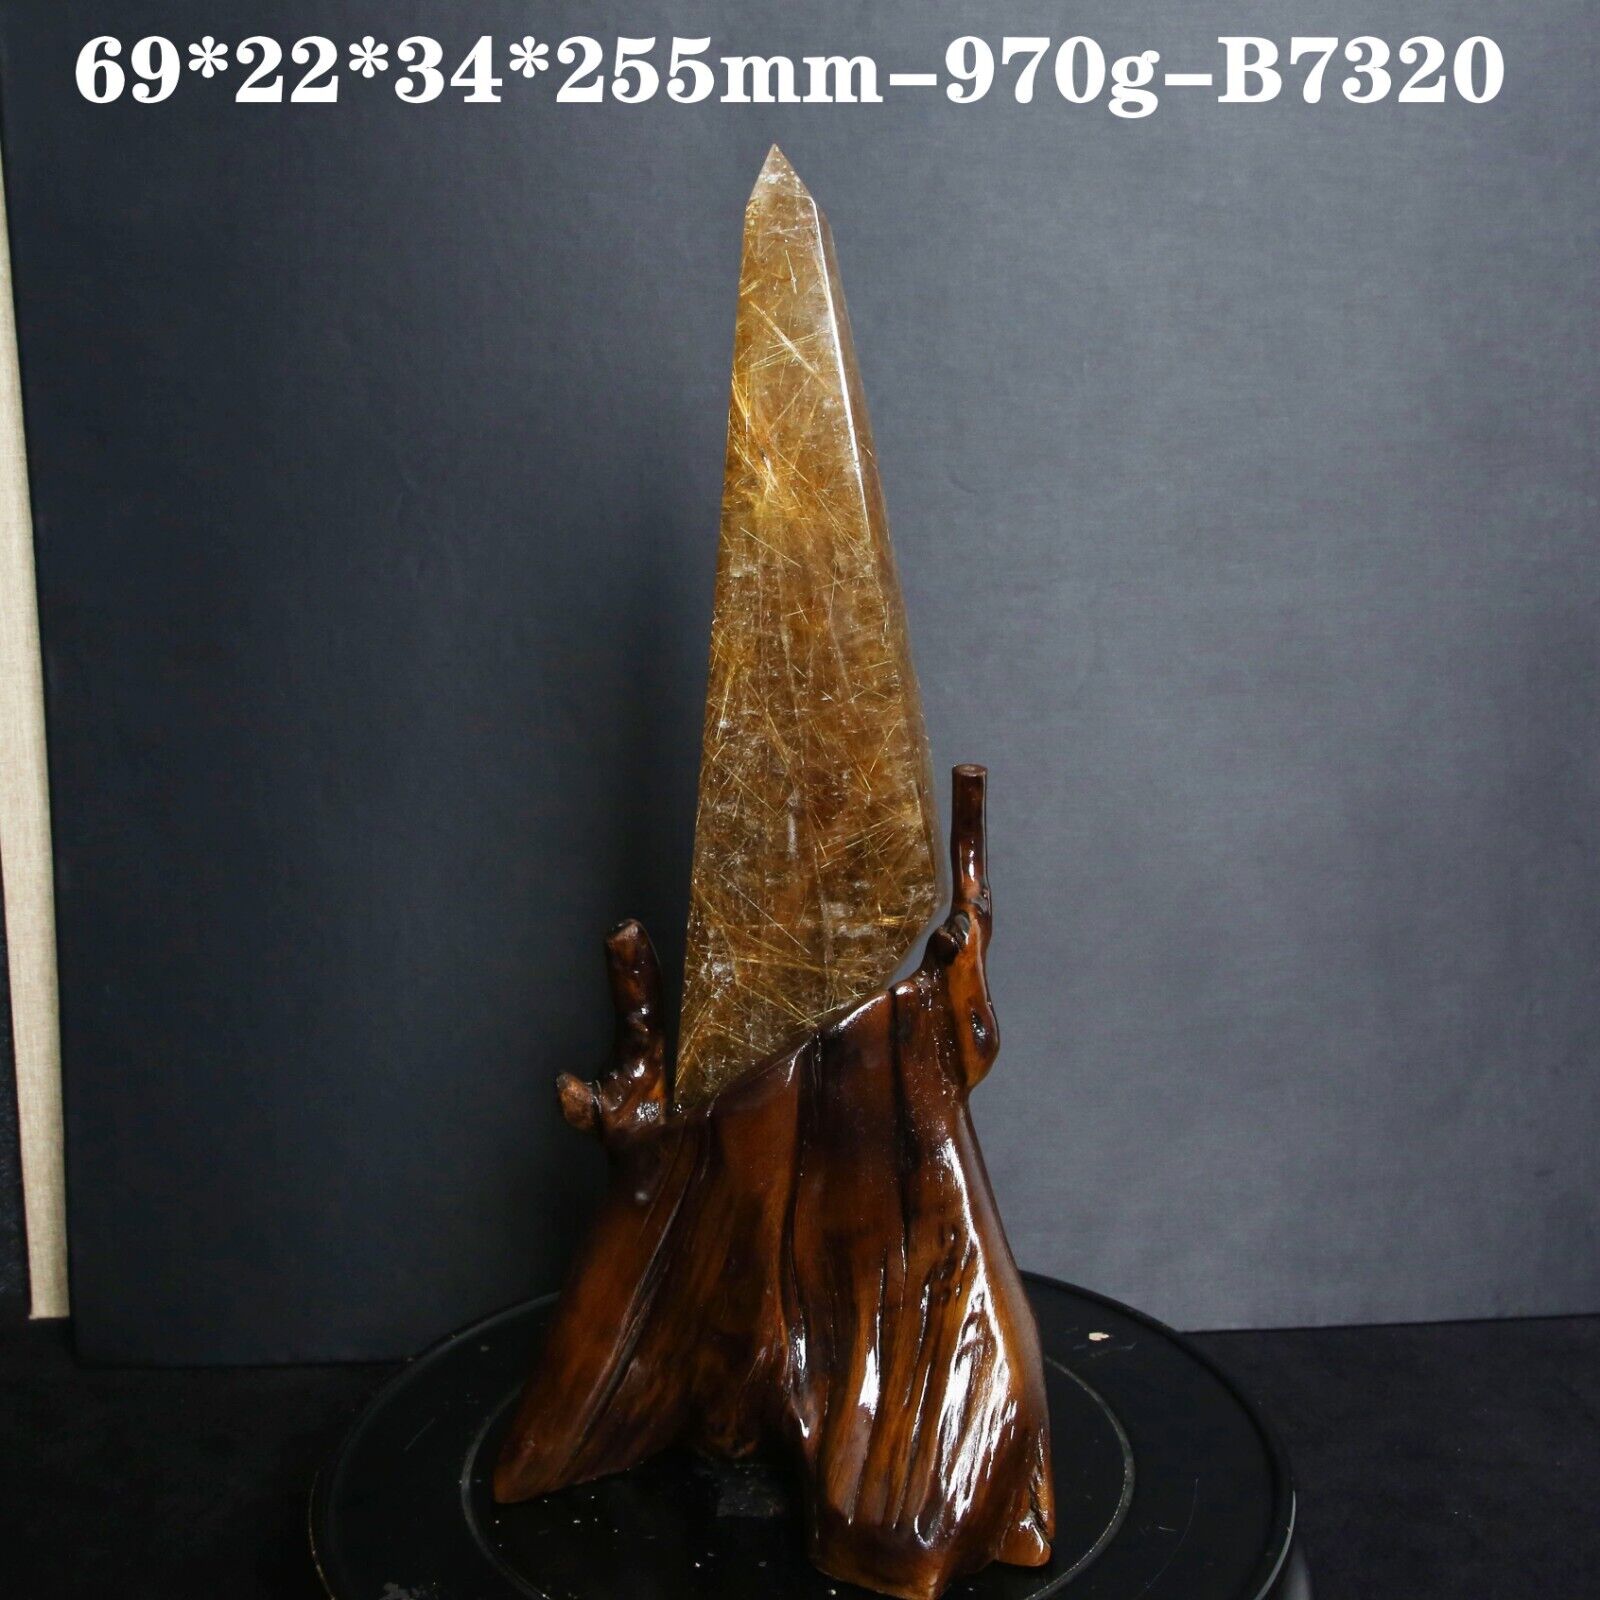 B7320-970g Rare NATURAL Copper Hair Rutilated Quartz Crystal Point Healing